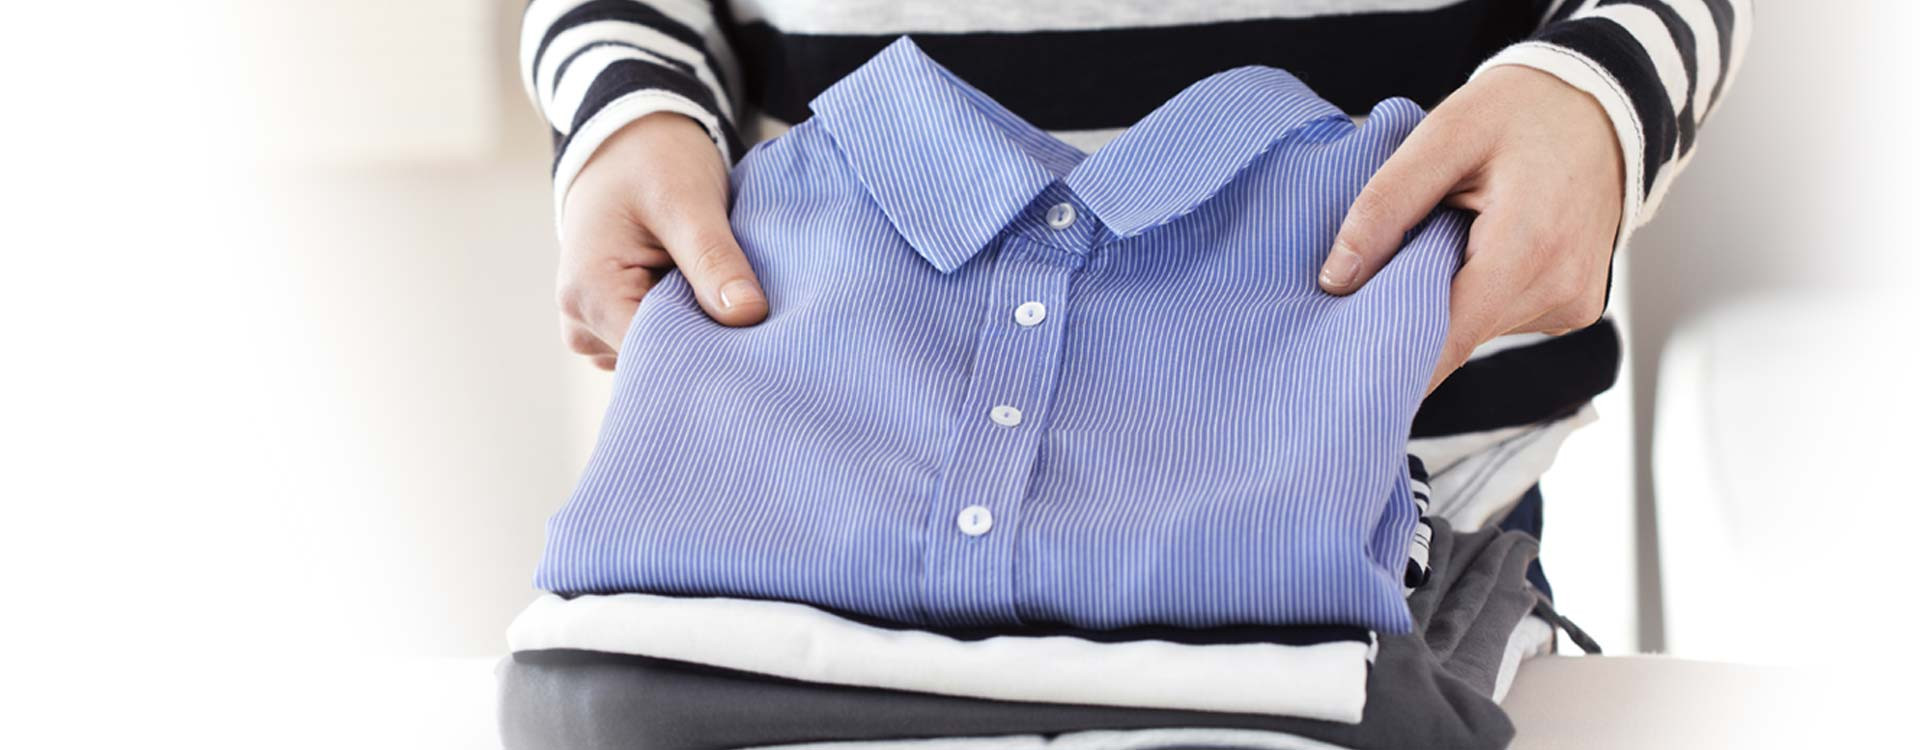 Sprawdź, jak poprawnie prasować koszule! Poznaj tajemnicę doskonale gładkiego materiału